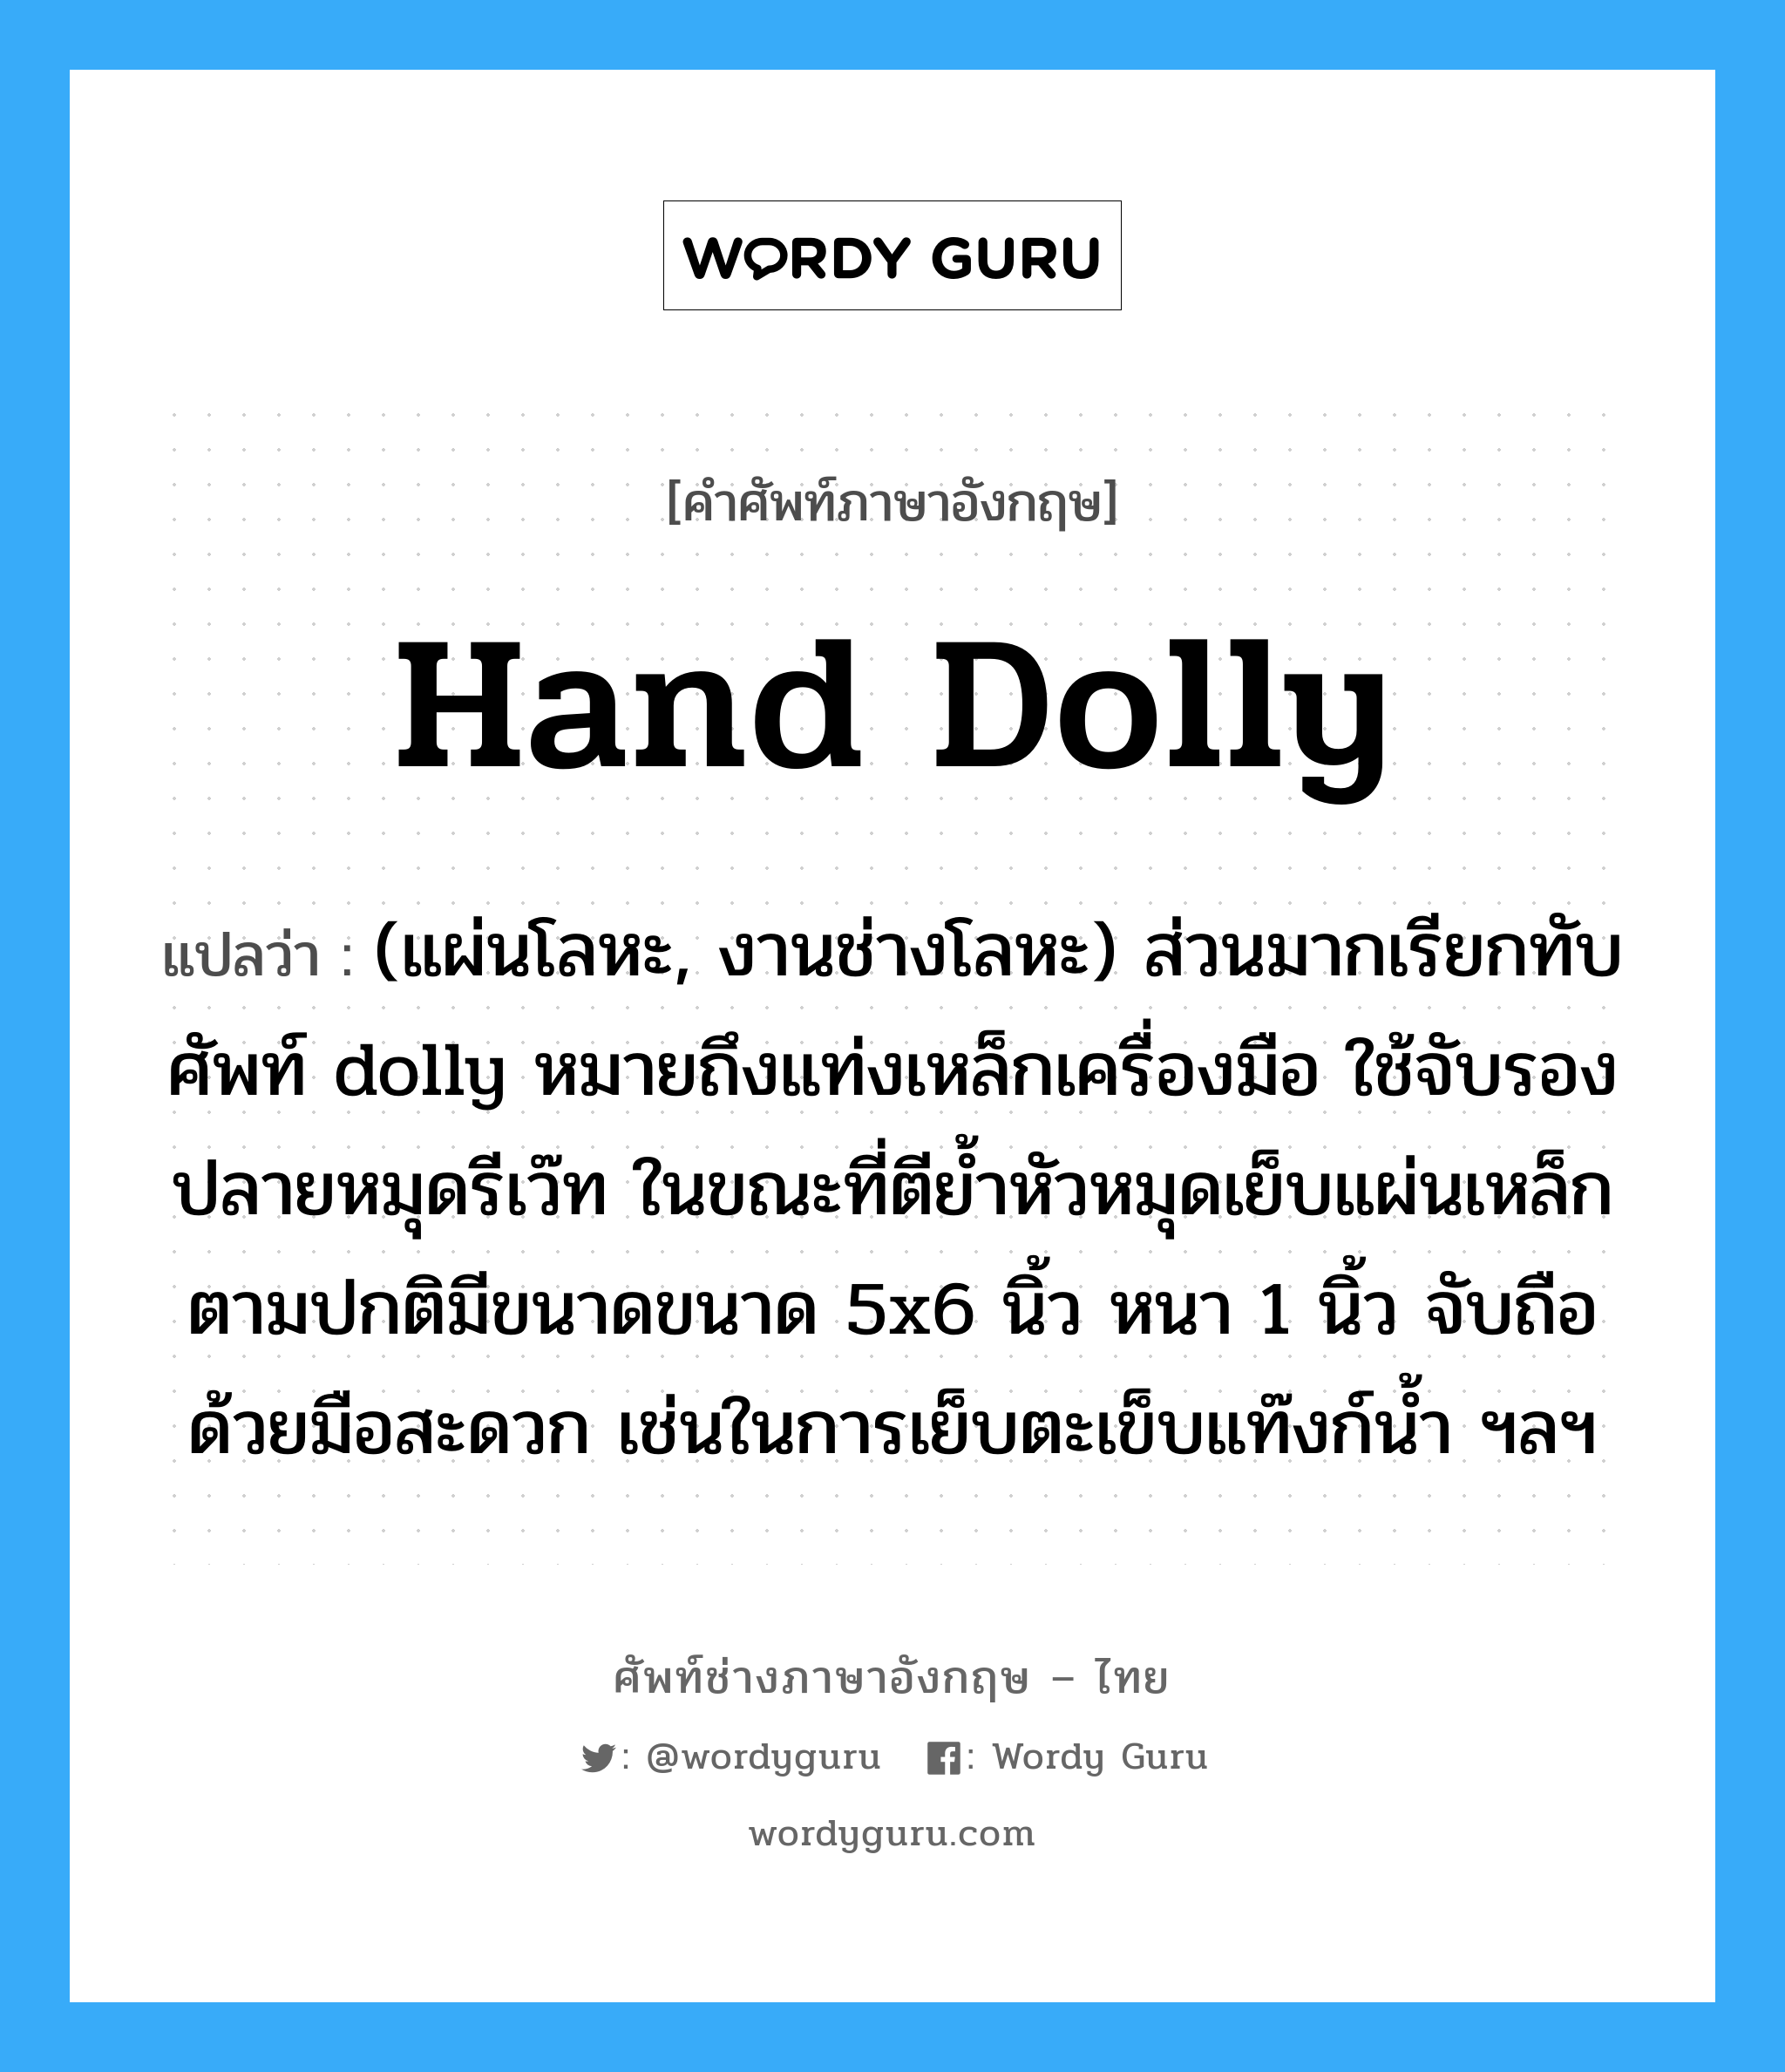 hand dolly แปลว่า?, คำศัพท์ช่างภาษาอังกฤษ - ไทย hand dolly คำศัพท์ภาษาอังกฤษ hand dolly แปลว่า (แผ่นโลหะ, งานช่างโลหะ) ส่วนมากเรียกทับศัพท์ dolly หมายถึงแท่งเหล็กเครื่องมือ ใช้จับรองปลายหมุดรีเว๊ท ในขณะที่ตีย้ำหัวหมุดเย็บแผ่นเหล็ก ตามปกติมีขนาดขนาด 5x6 นิ้ว หนา 1 นิ้ว จับถือด้วยมือสะดวก เช่นในการเย็บตะเข็บแท๊งก์น้ำ ฯลฯ